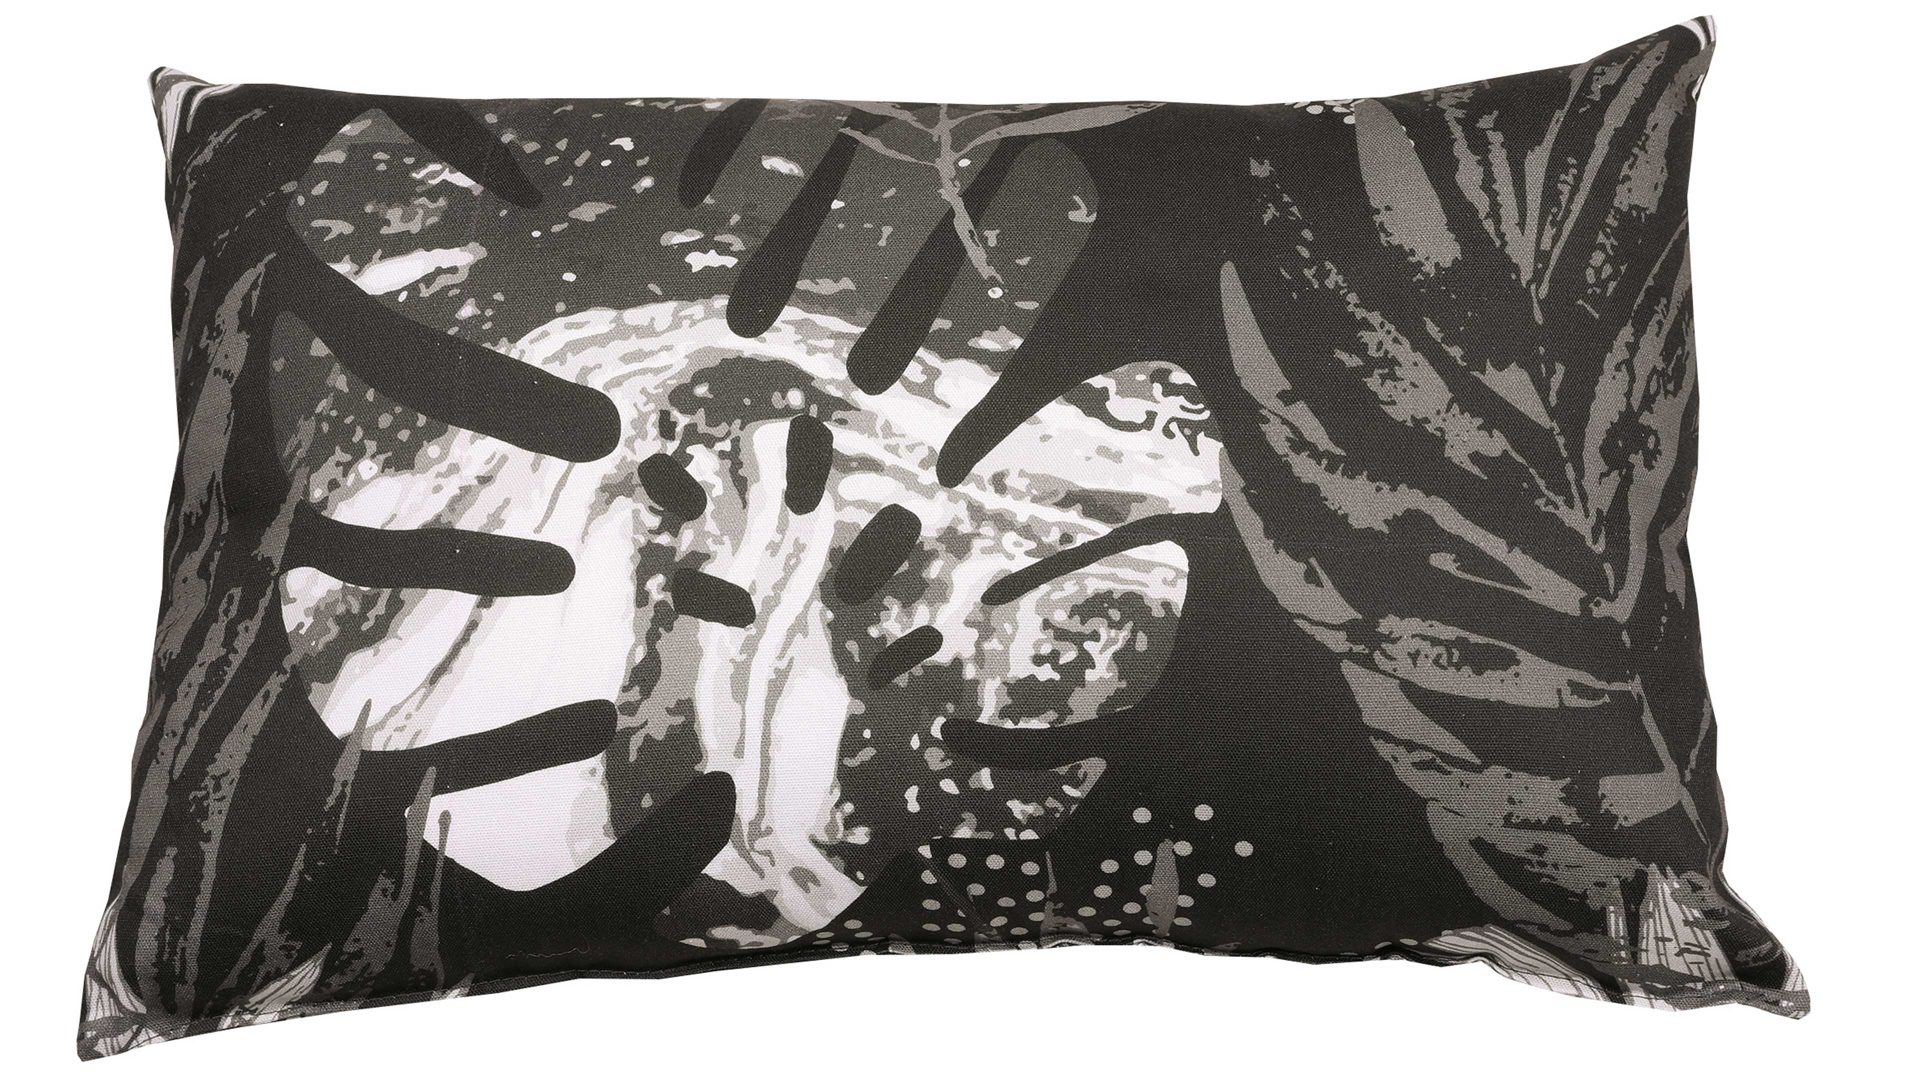 Einzelkissen Go-de textil aus Stoff in Schwarz GO-DE TEXTIL Auflagen Serie 19 - Zierkissen schwarz-weißes Blättermotiv - ca. 40 x 60 cm